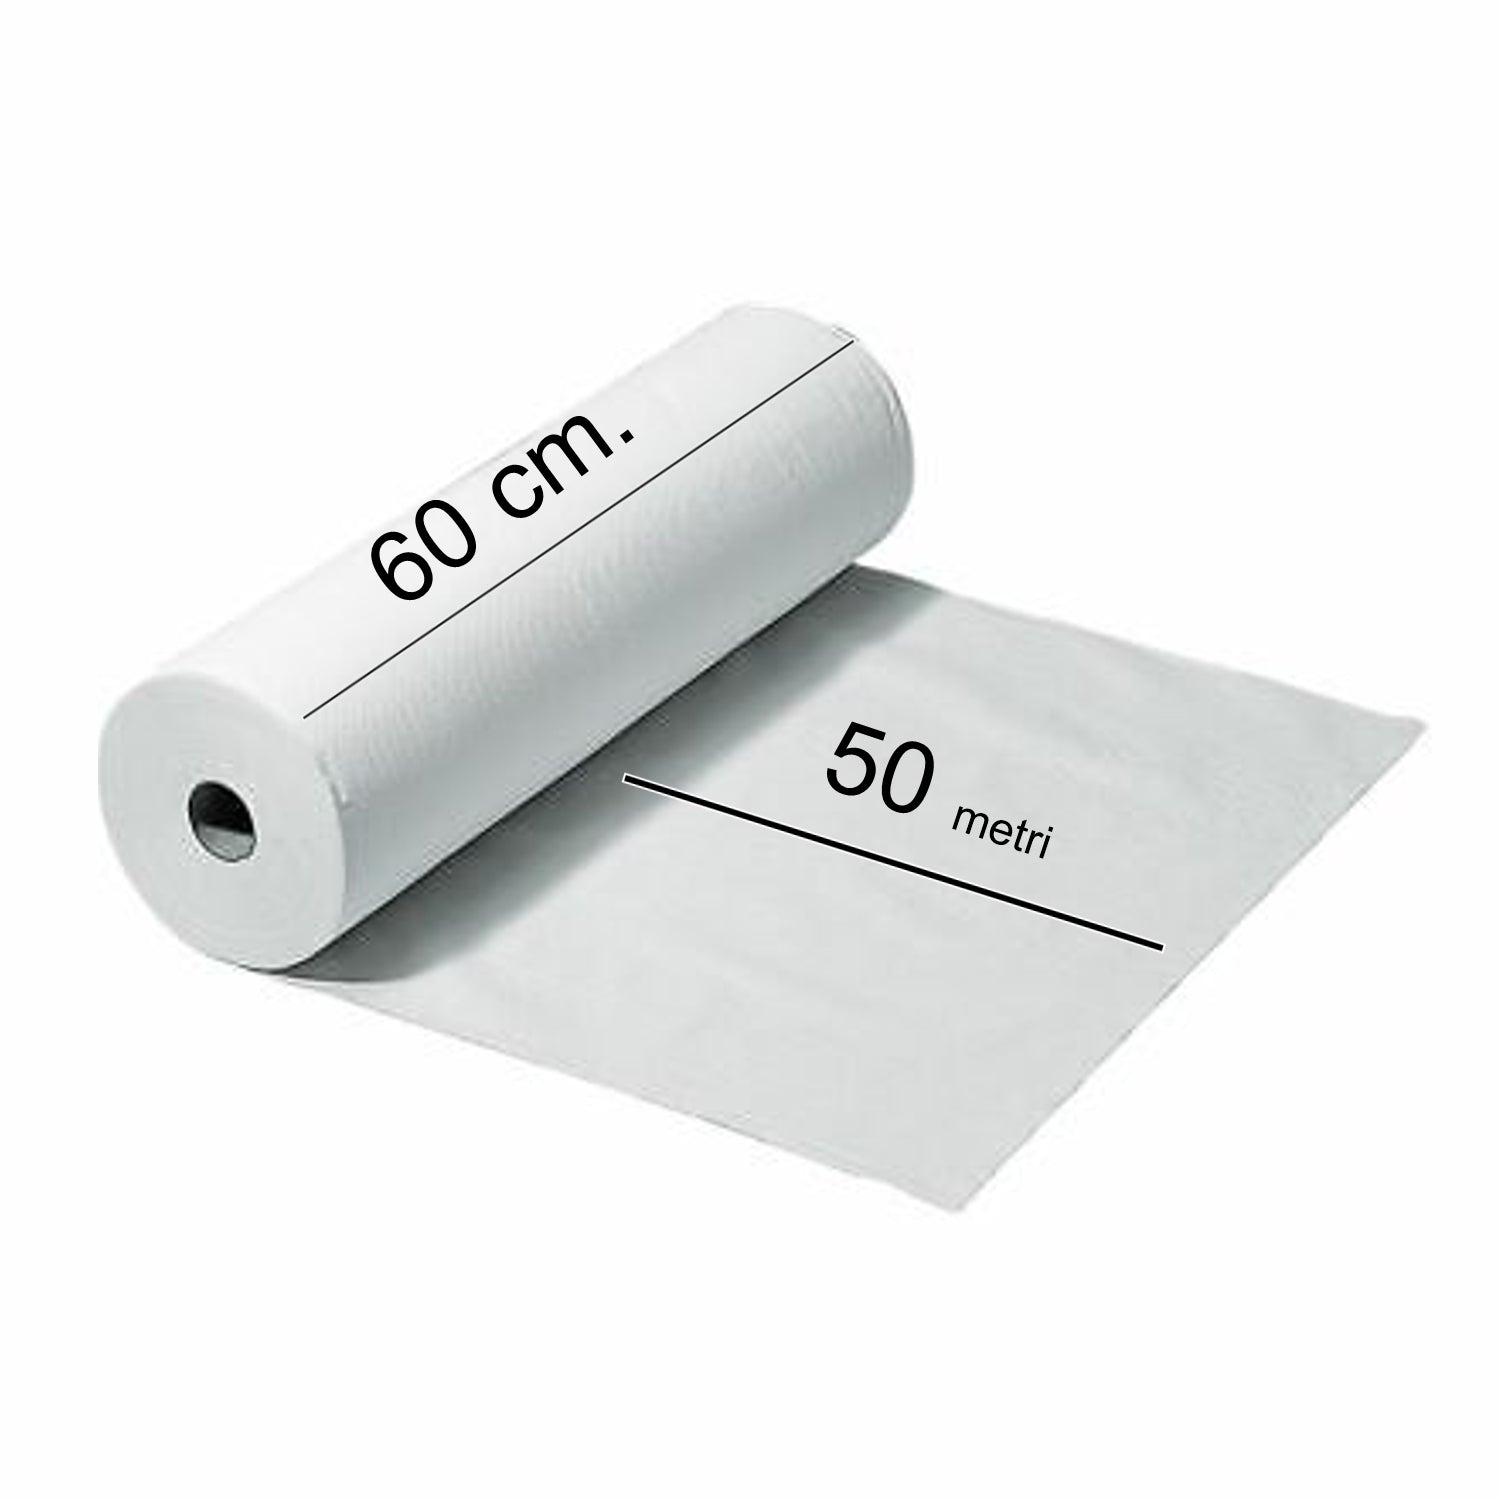 Impermeabile lenzuolino medico 2 veli 50 metri 60 H Confezione da 1 rotoli C60205 Celtex